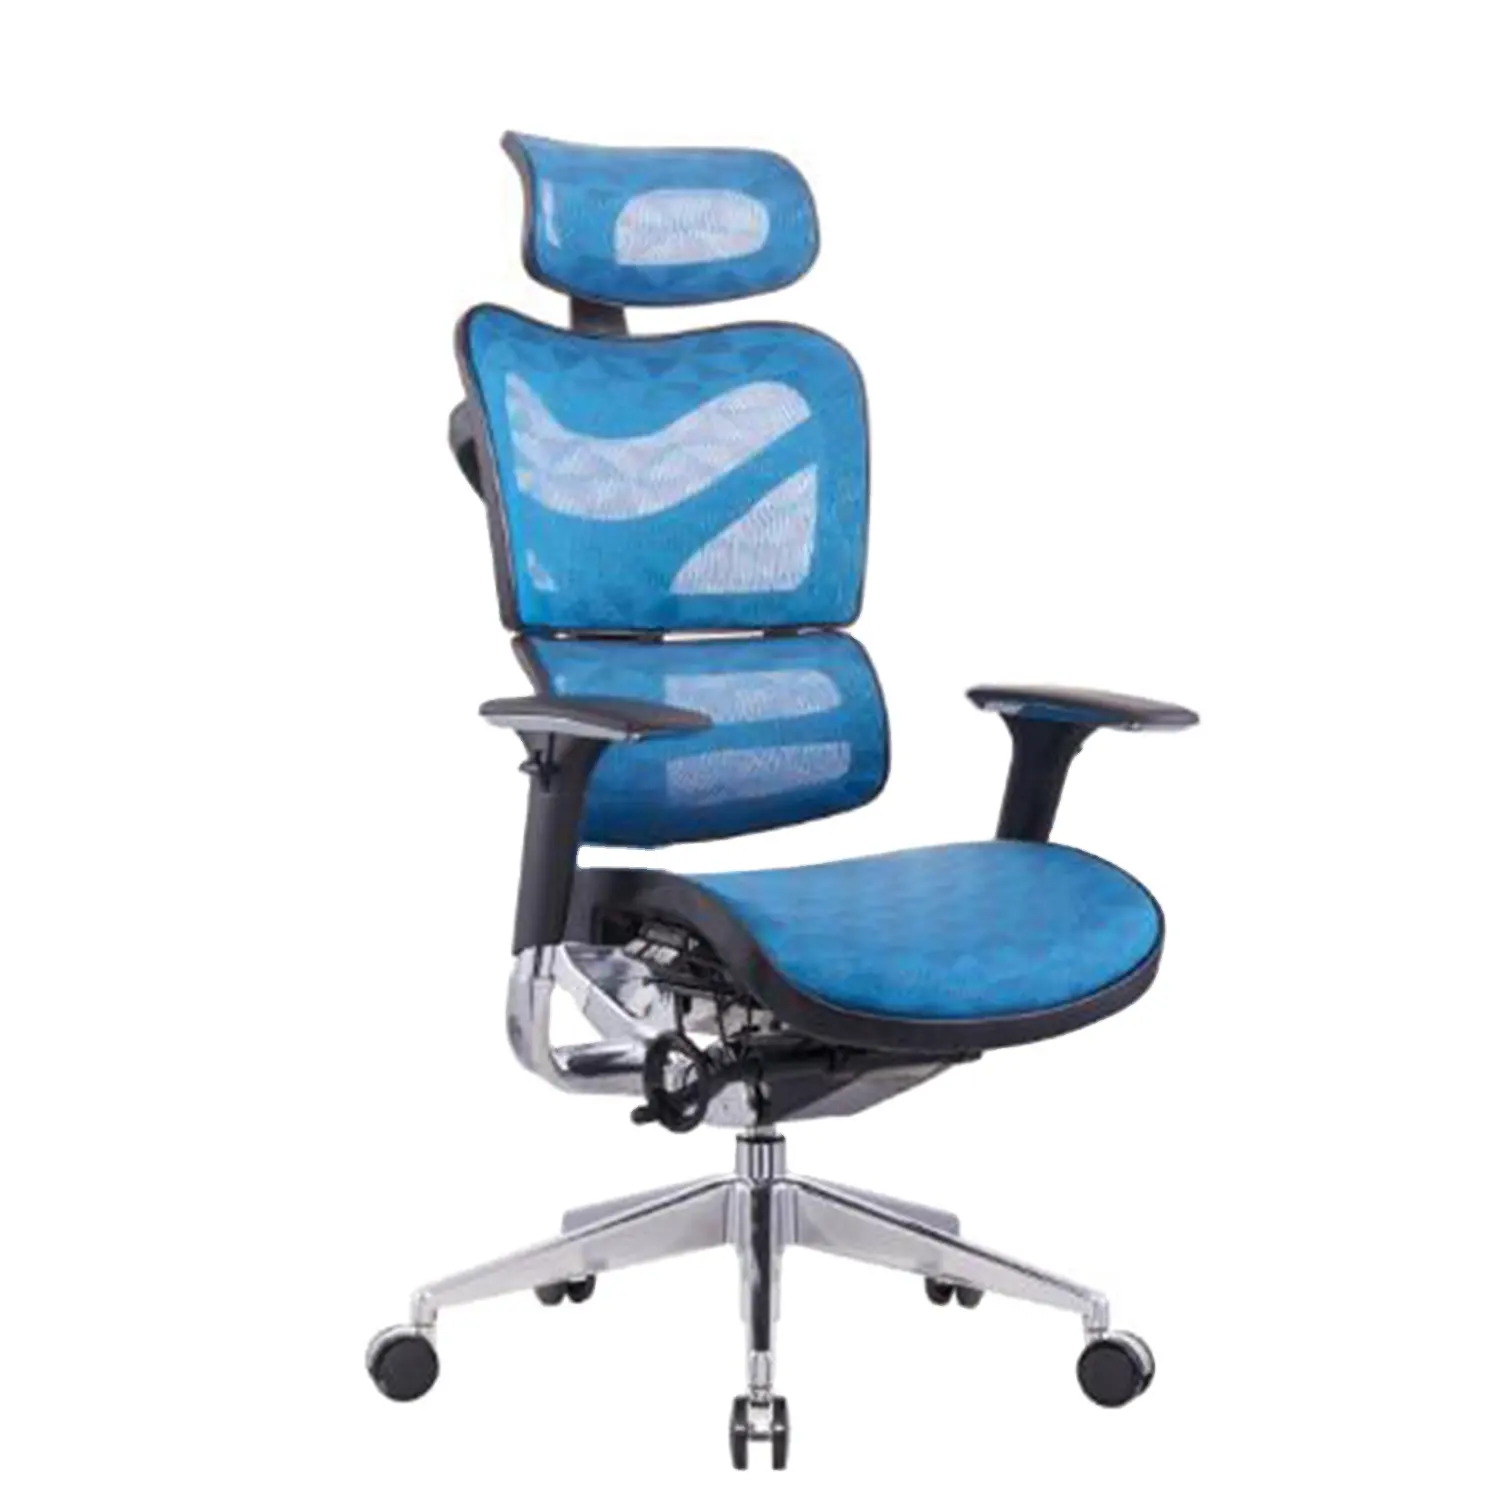 Sitz und Rückenlehne können verstellbar Ergonomischer Luxus-Drehstuhl Ergo-Stuhl Sitz Schiebe-Schreibtischs tuhl